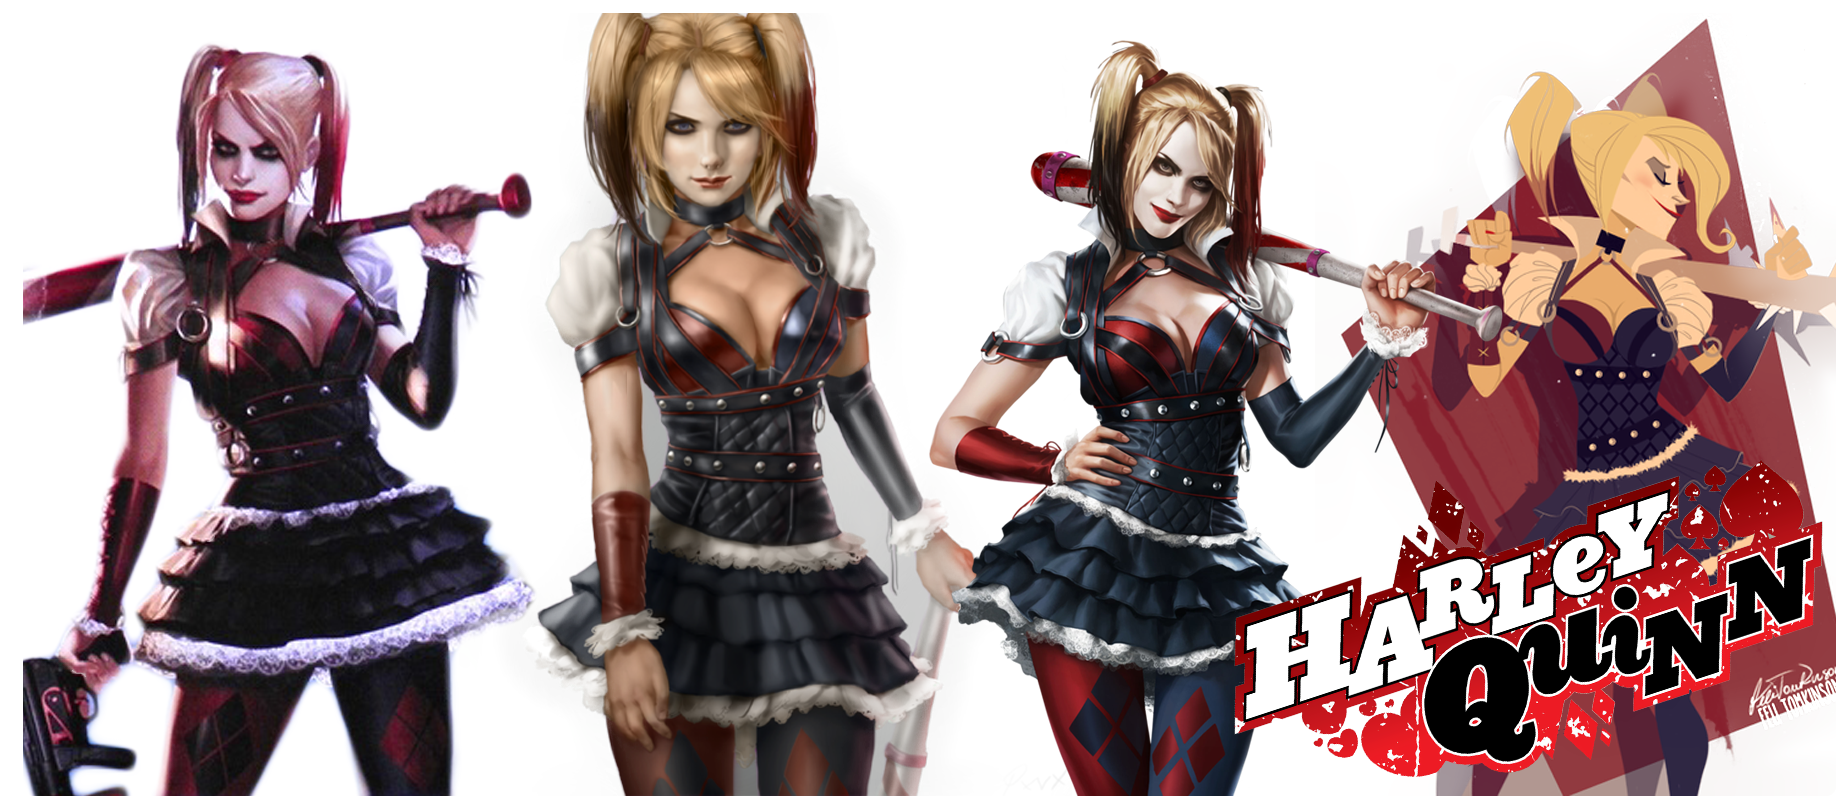 Harley Quinn Arkham Knight By Douglaso7 Fan Art Wallpaper Games